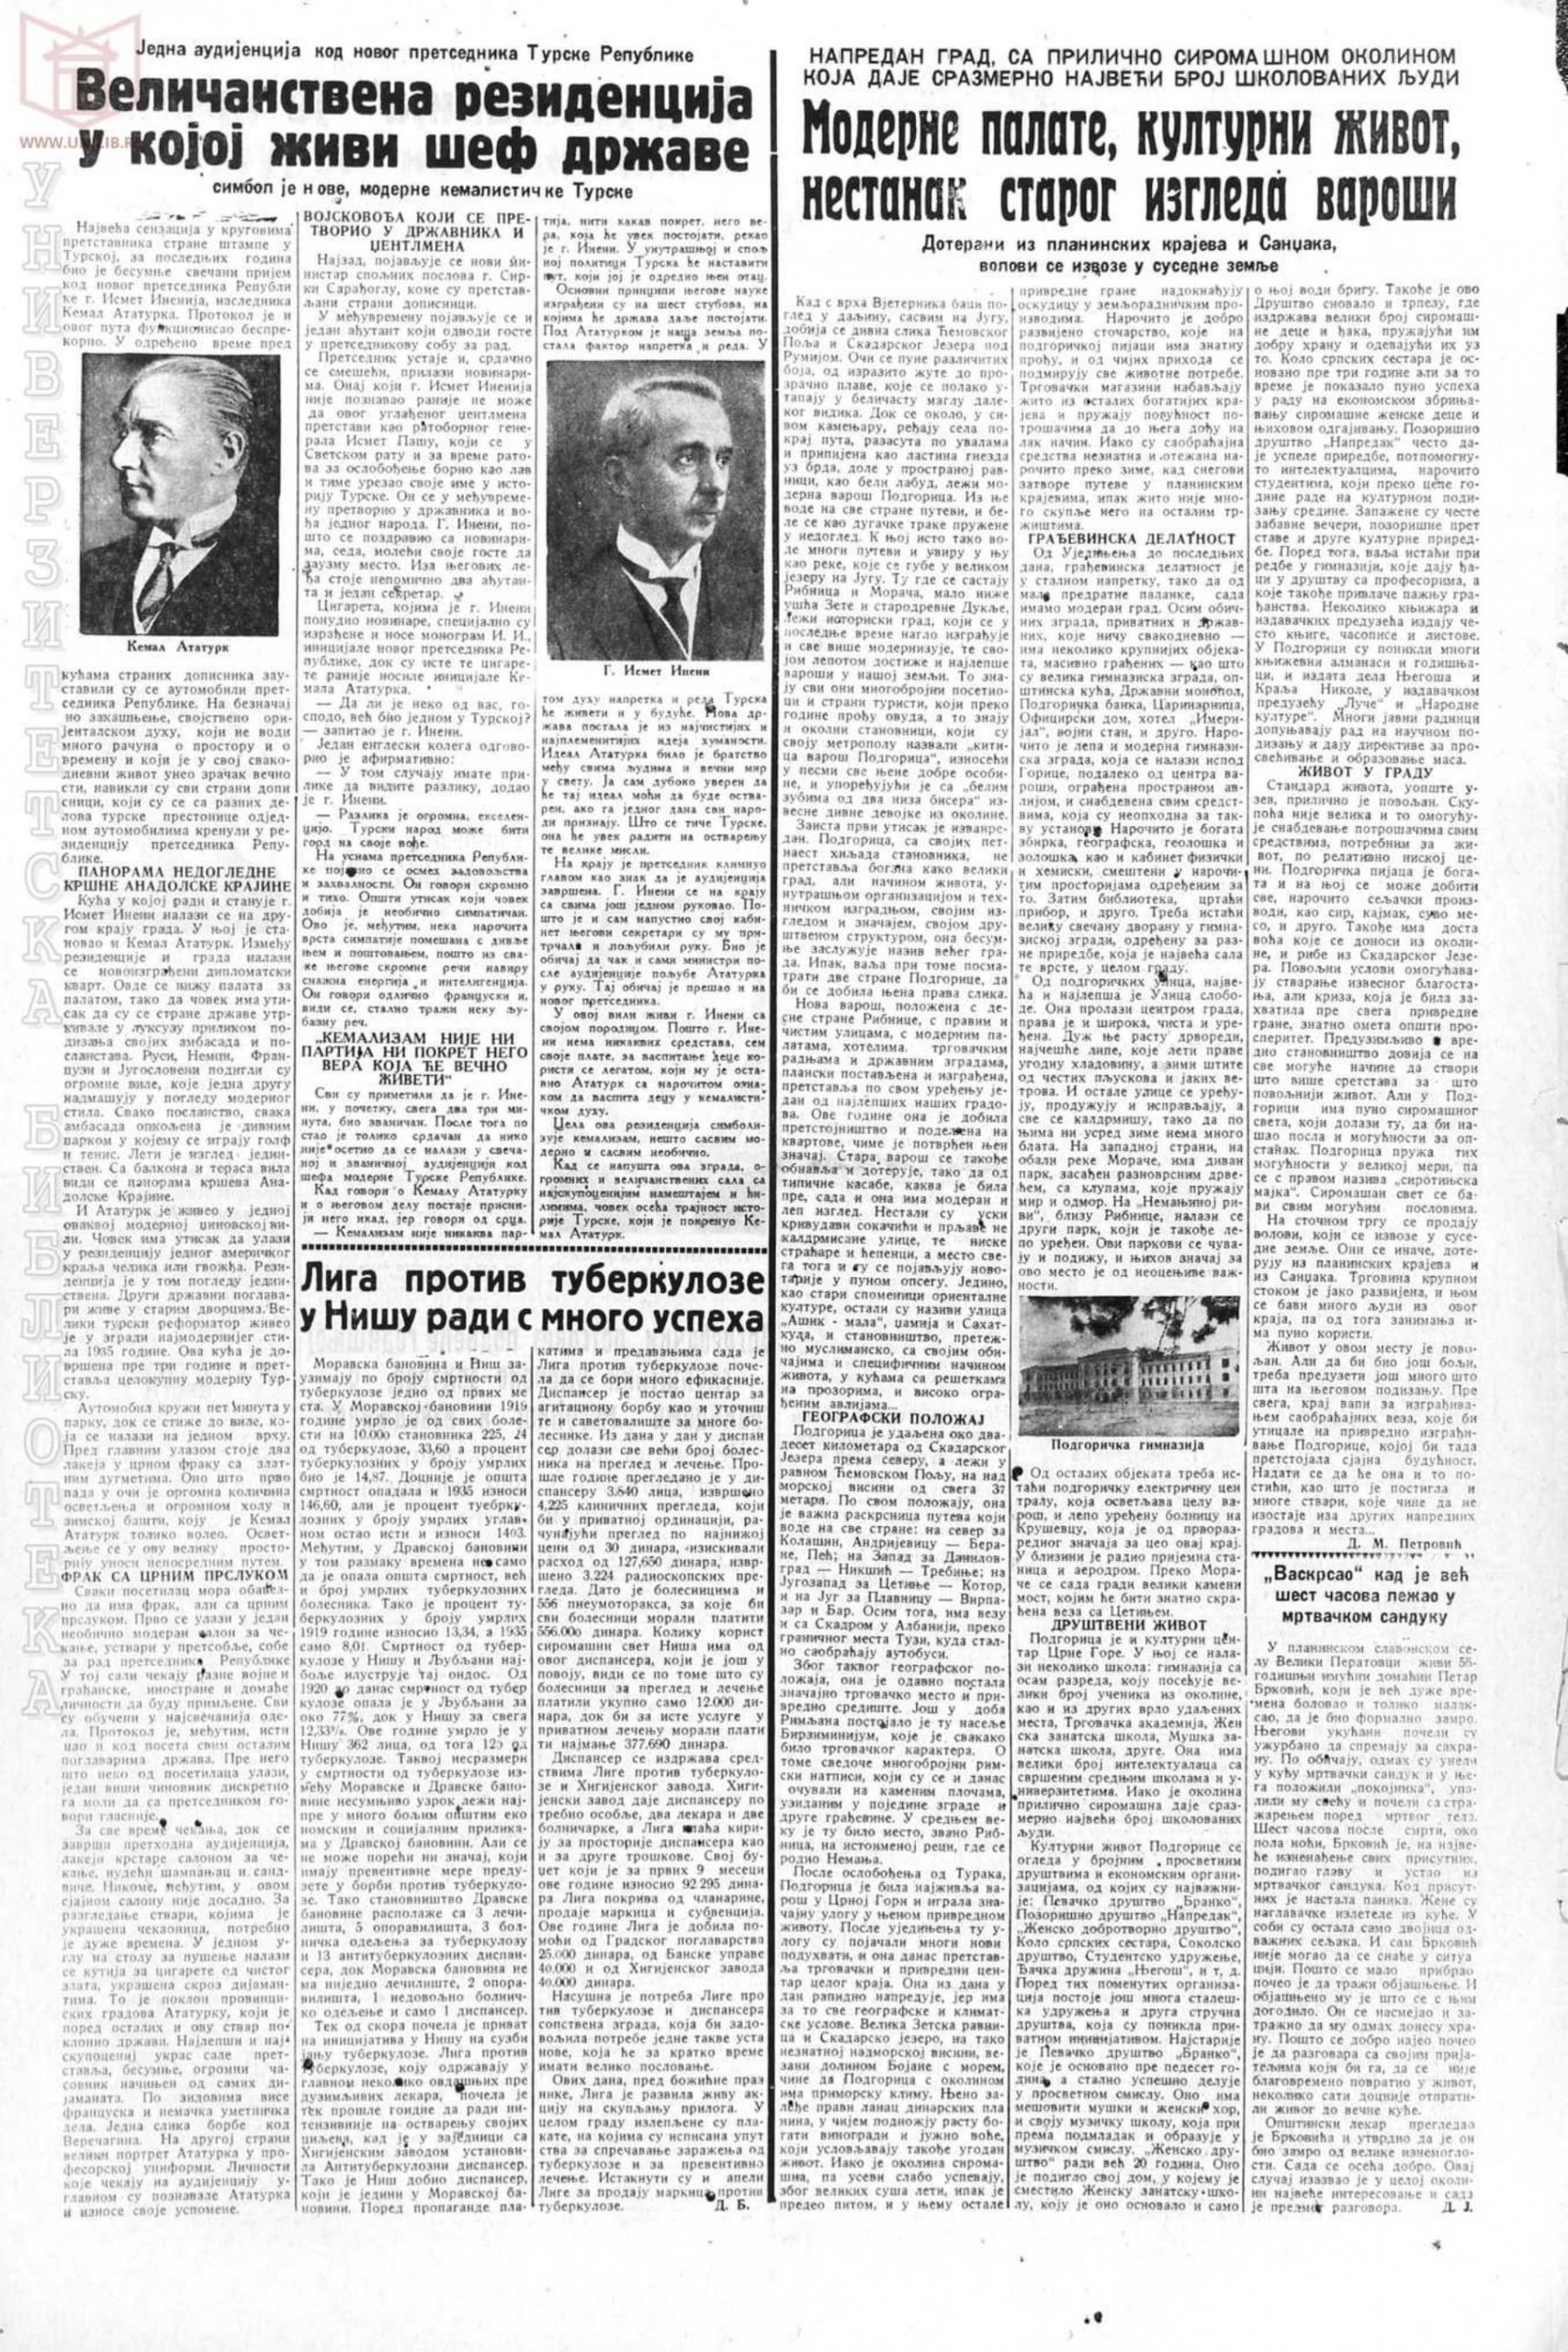 Pravda 1939-01-22 p15-1